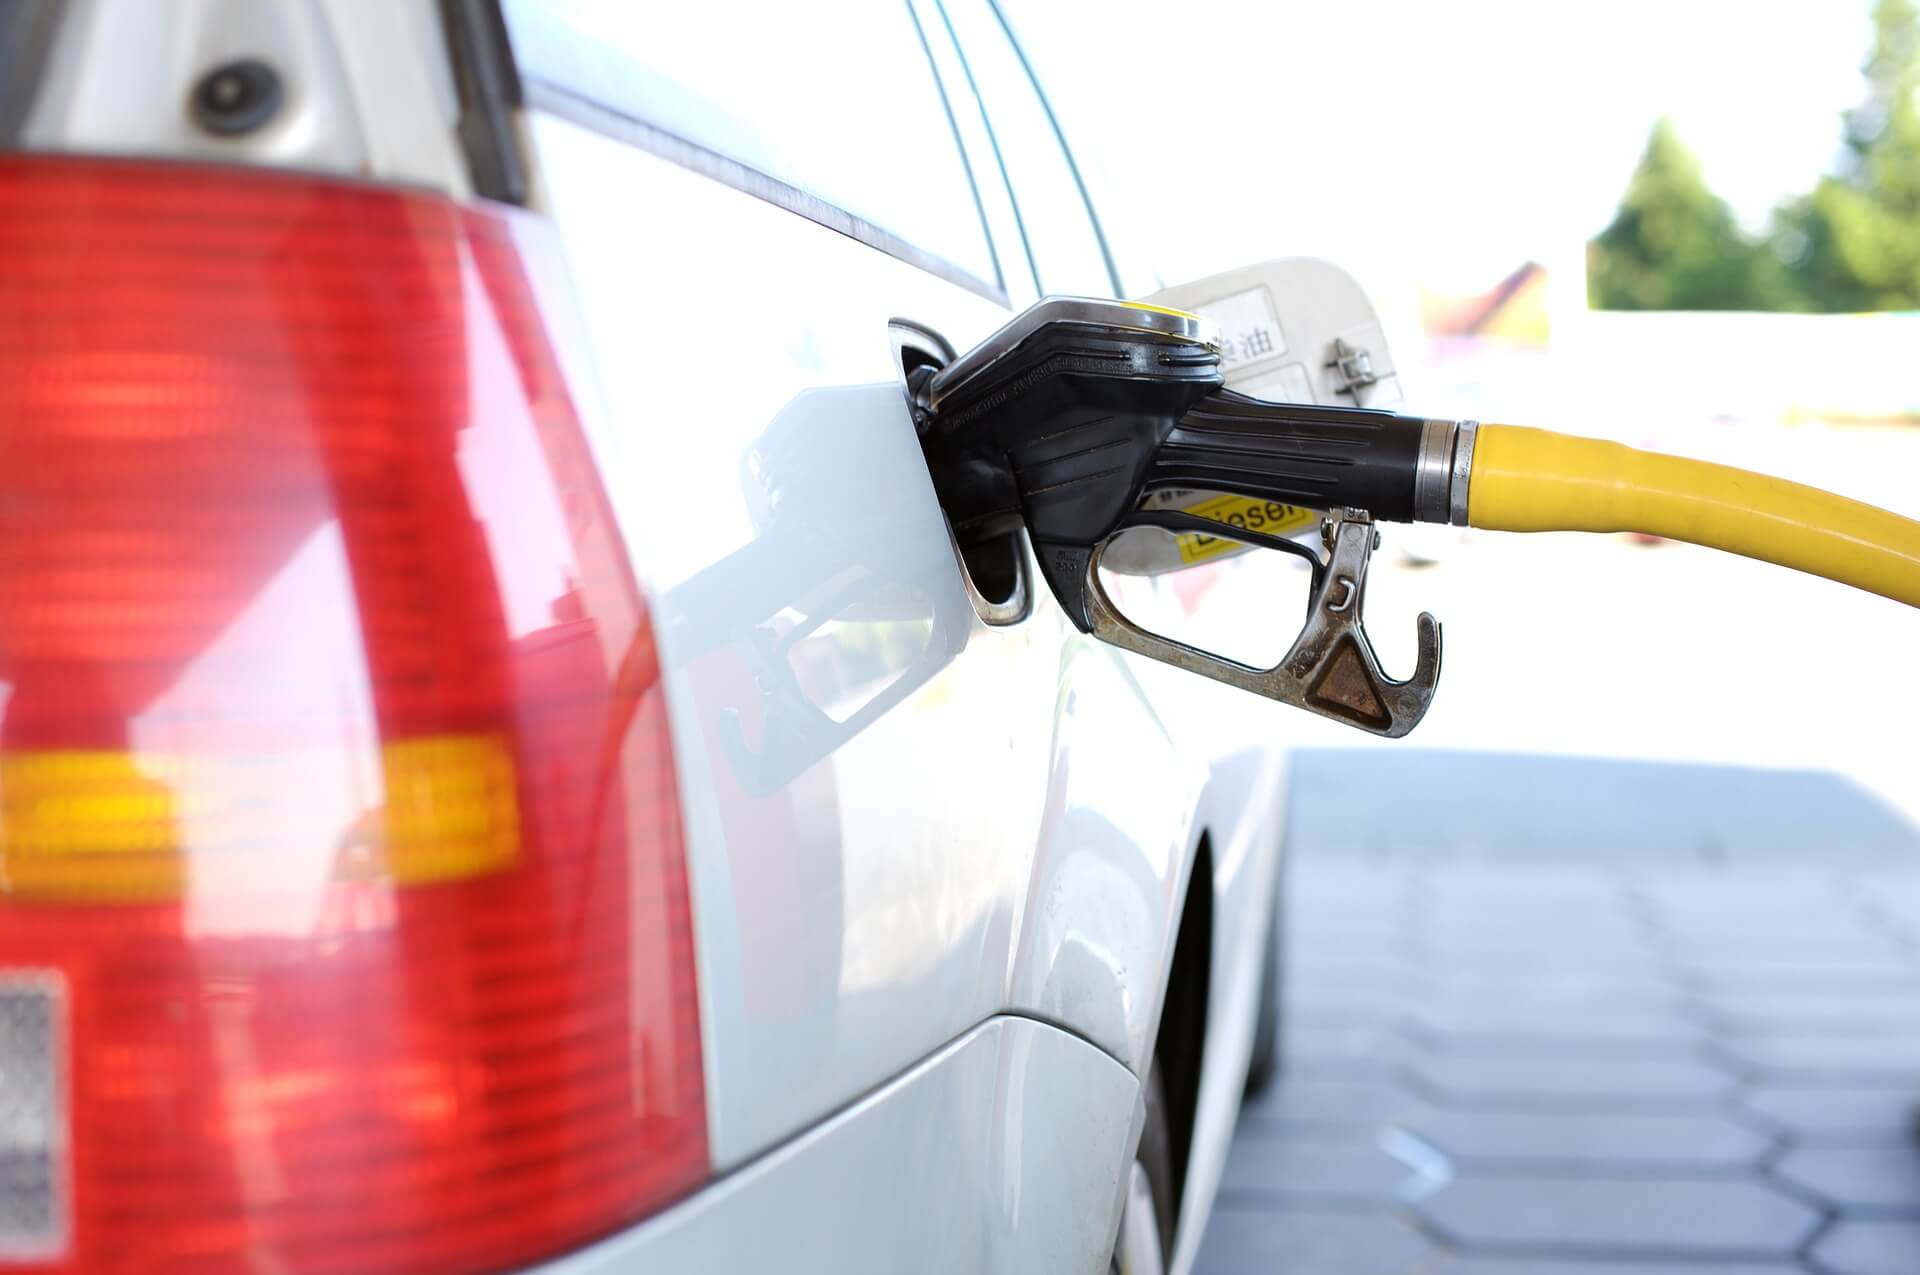 Álcool ou Gasolina: qual vale mais a pena? Na imagem um carro parado em um posto de combustivel sendo abastecido.